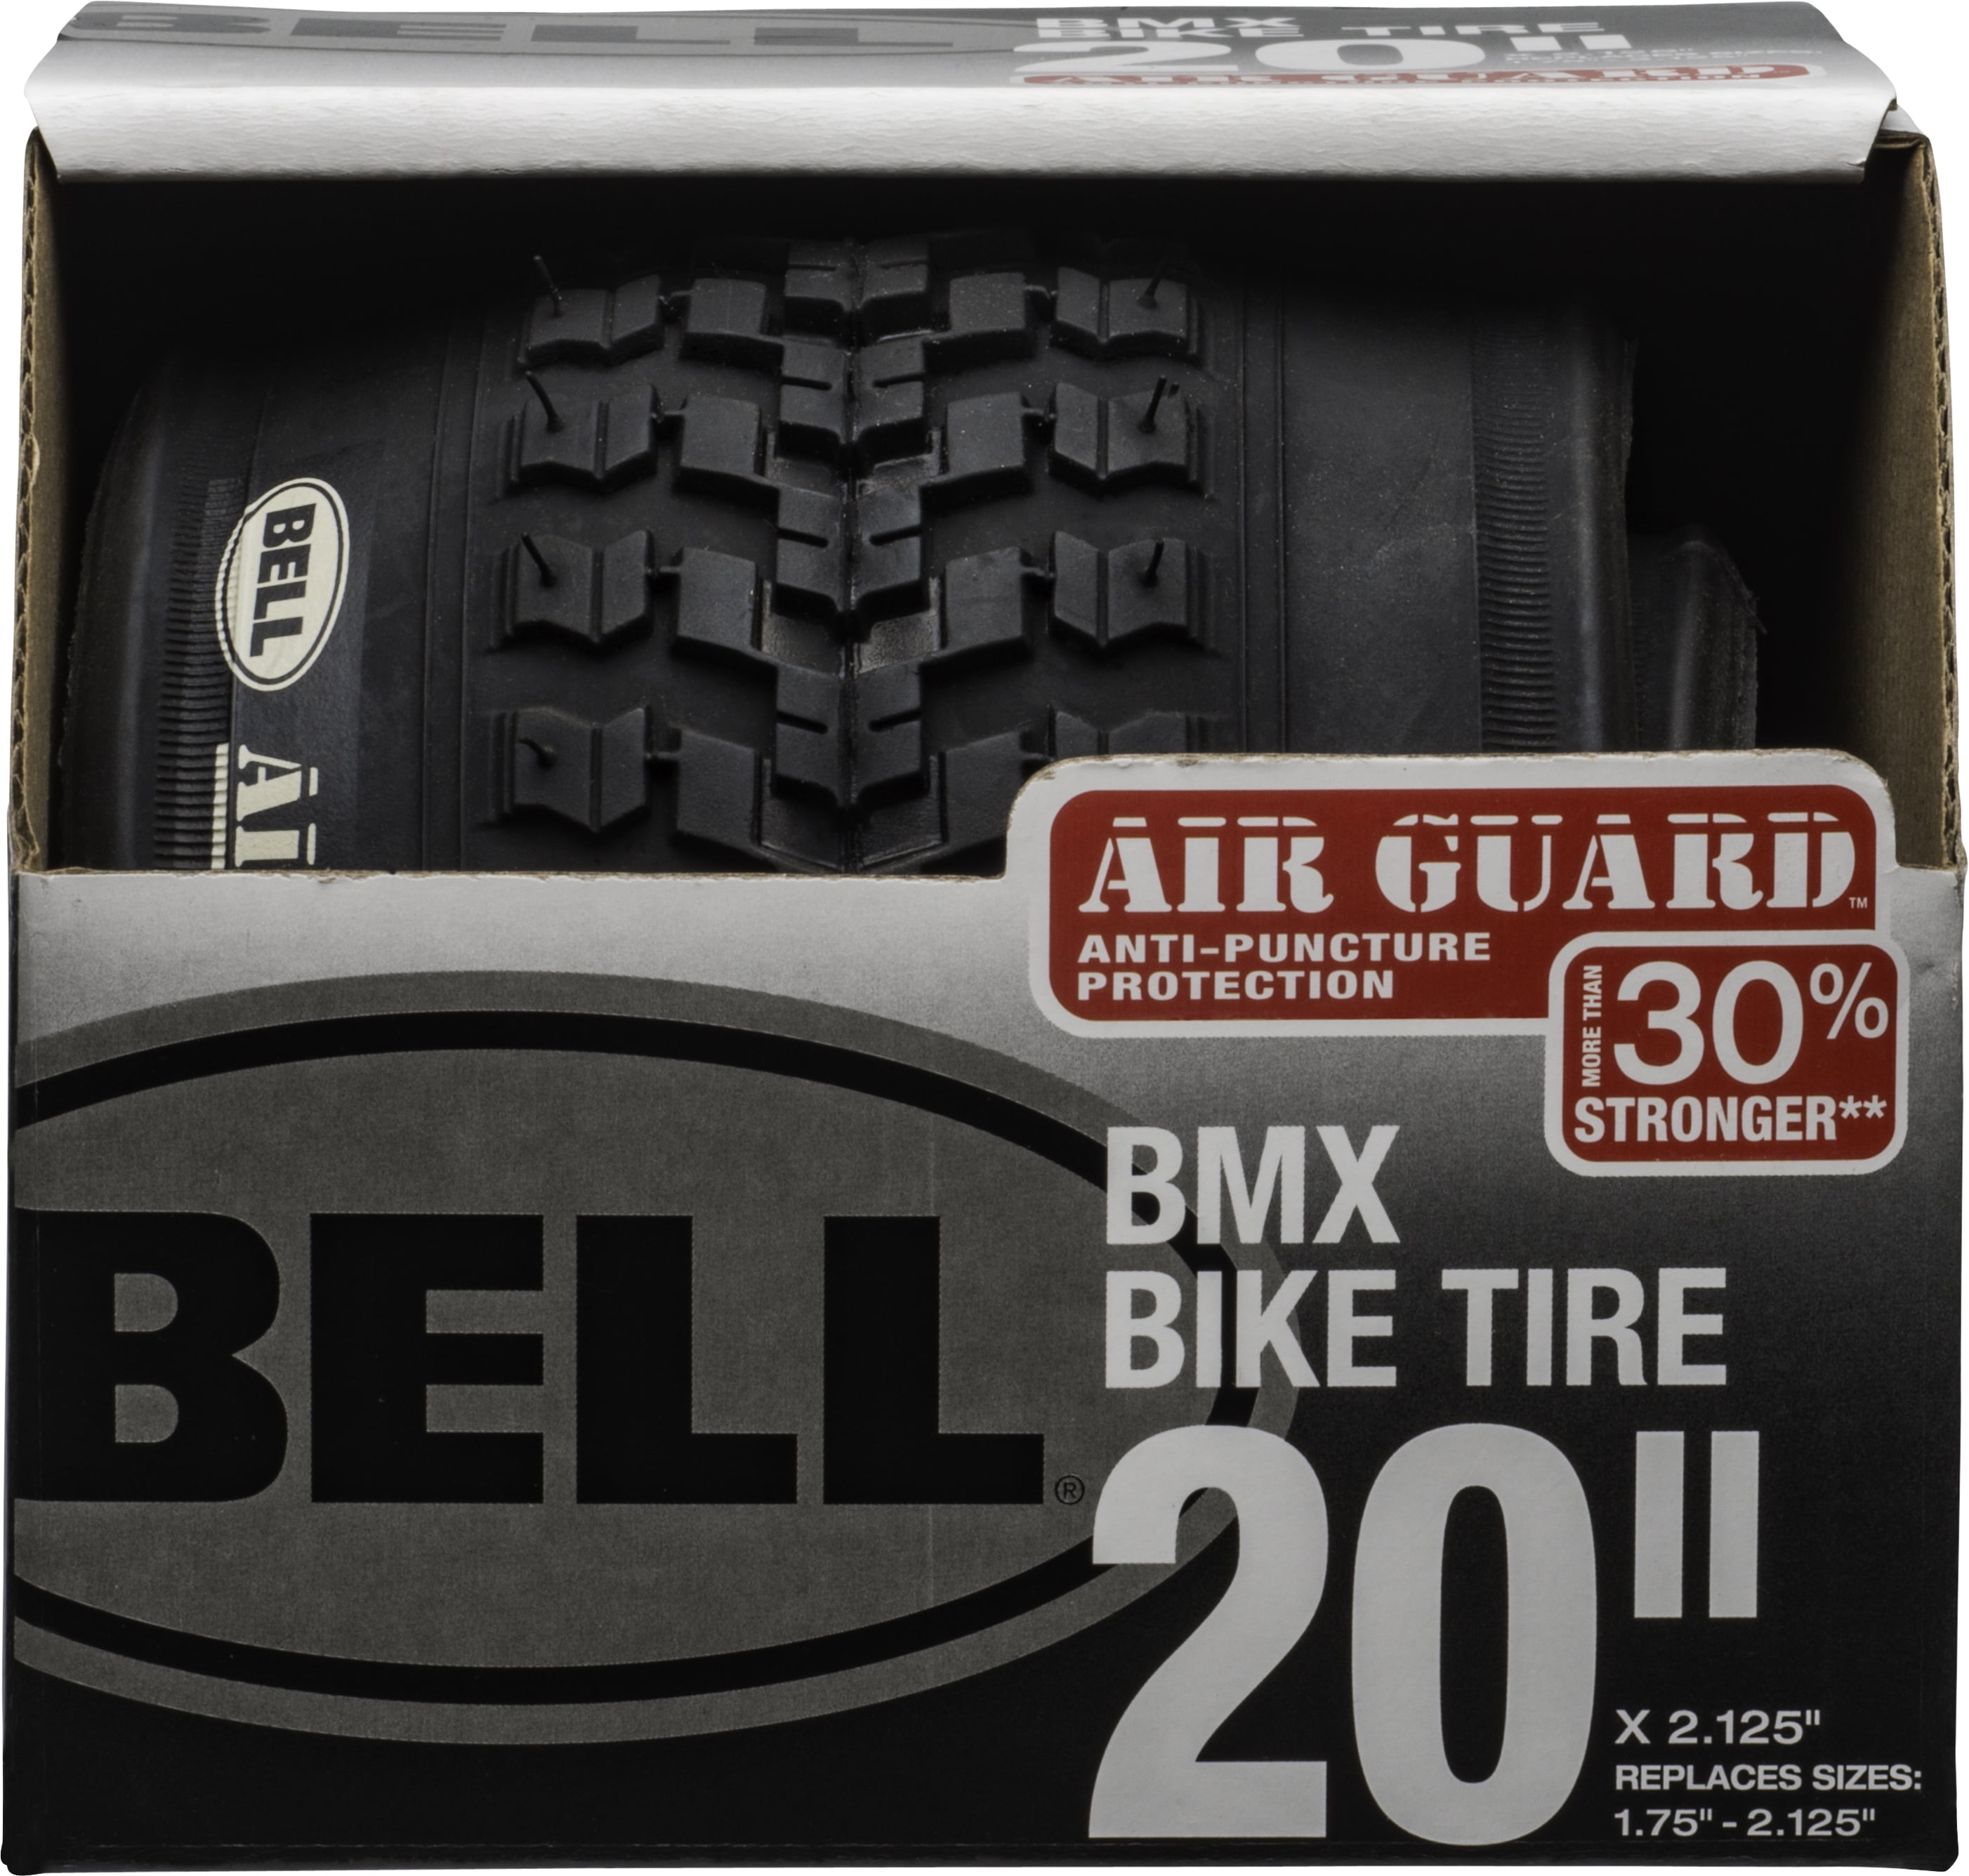 Details about   2 sets of 2 Bell Binder 450 Premium V-Brake Bike Bike Pads 